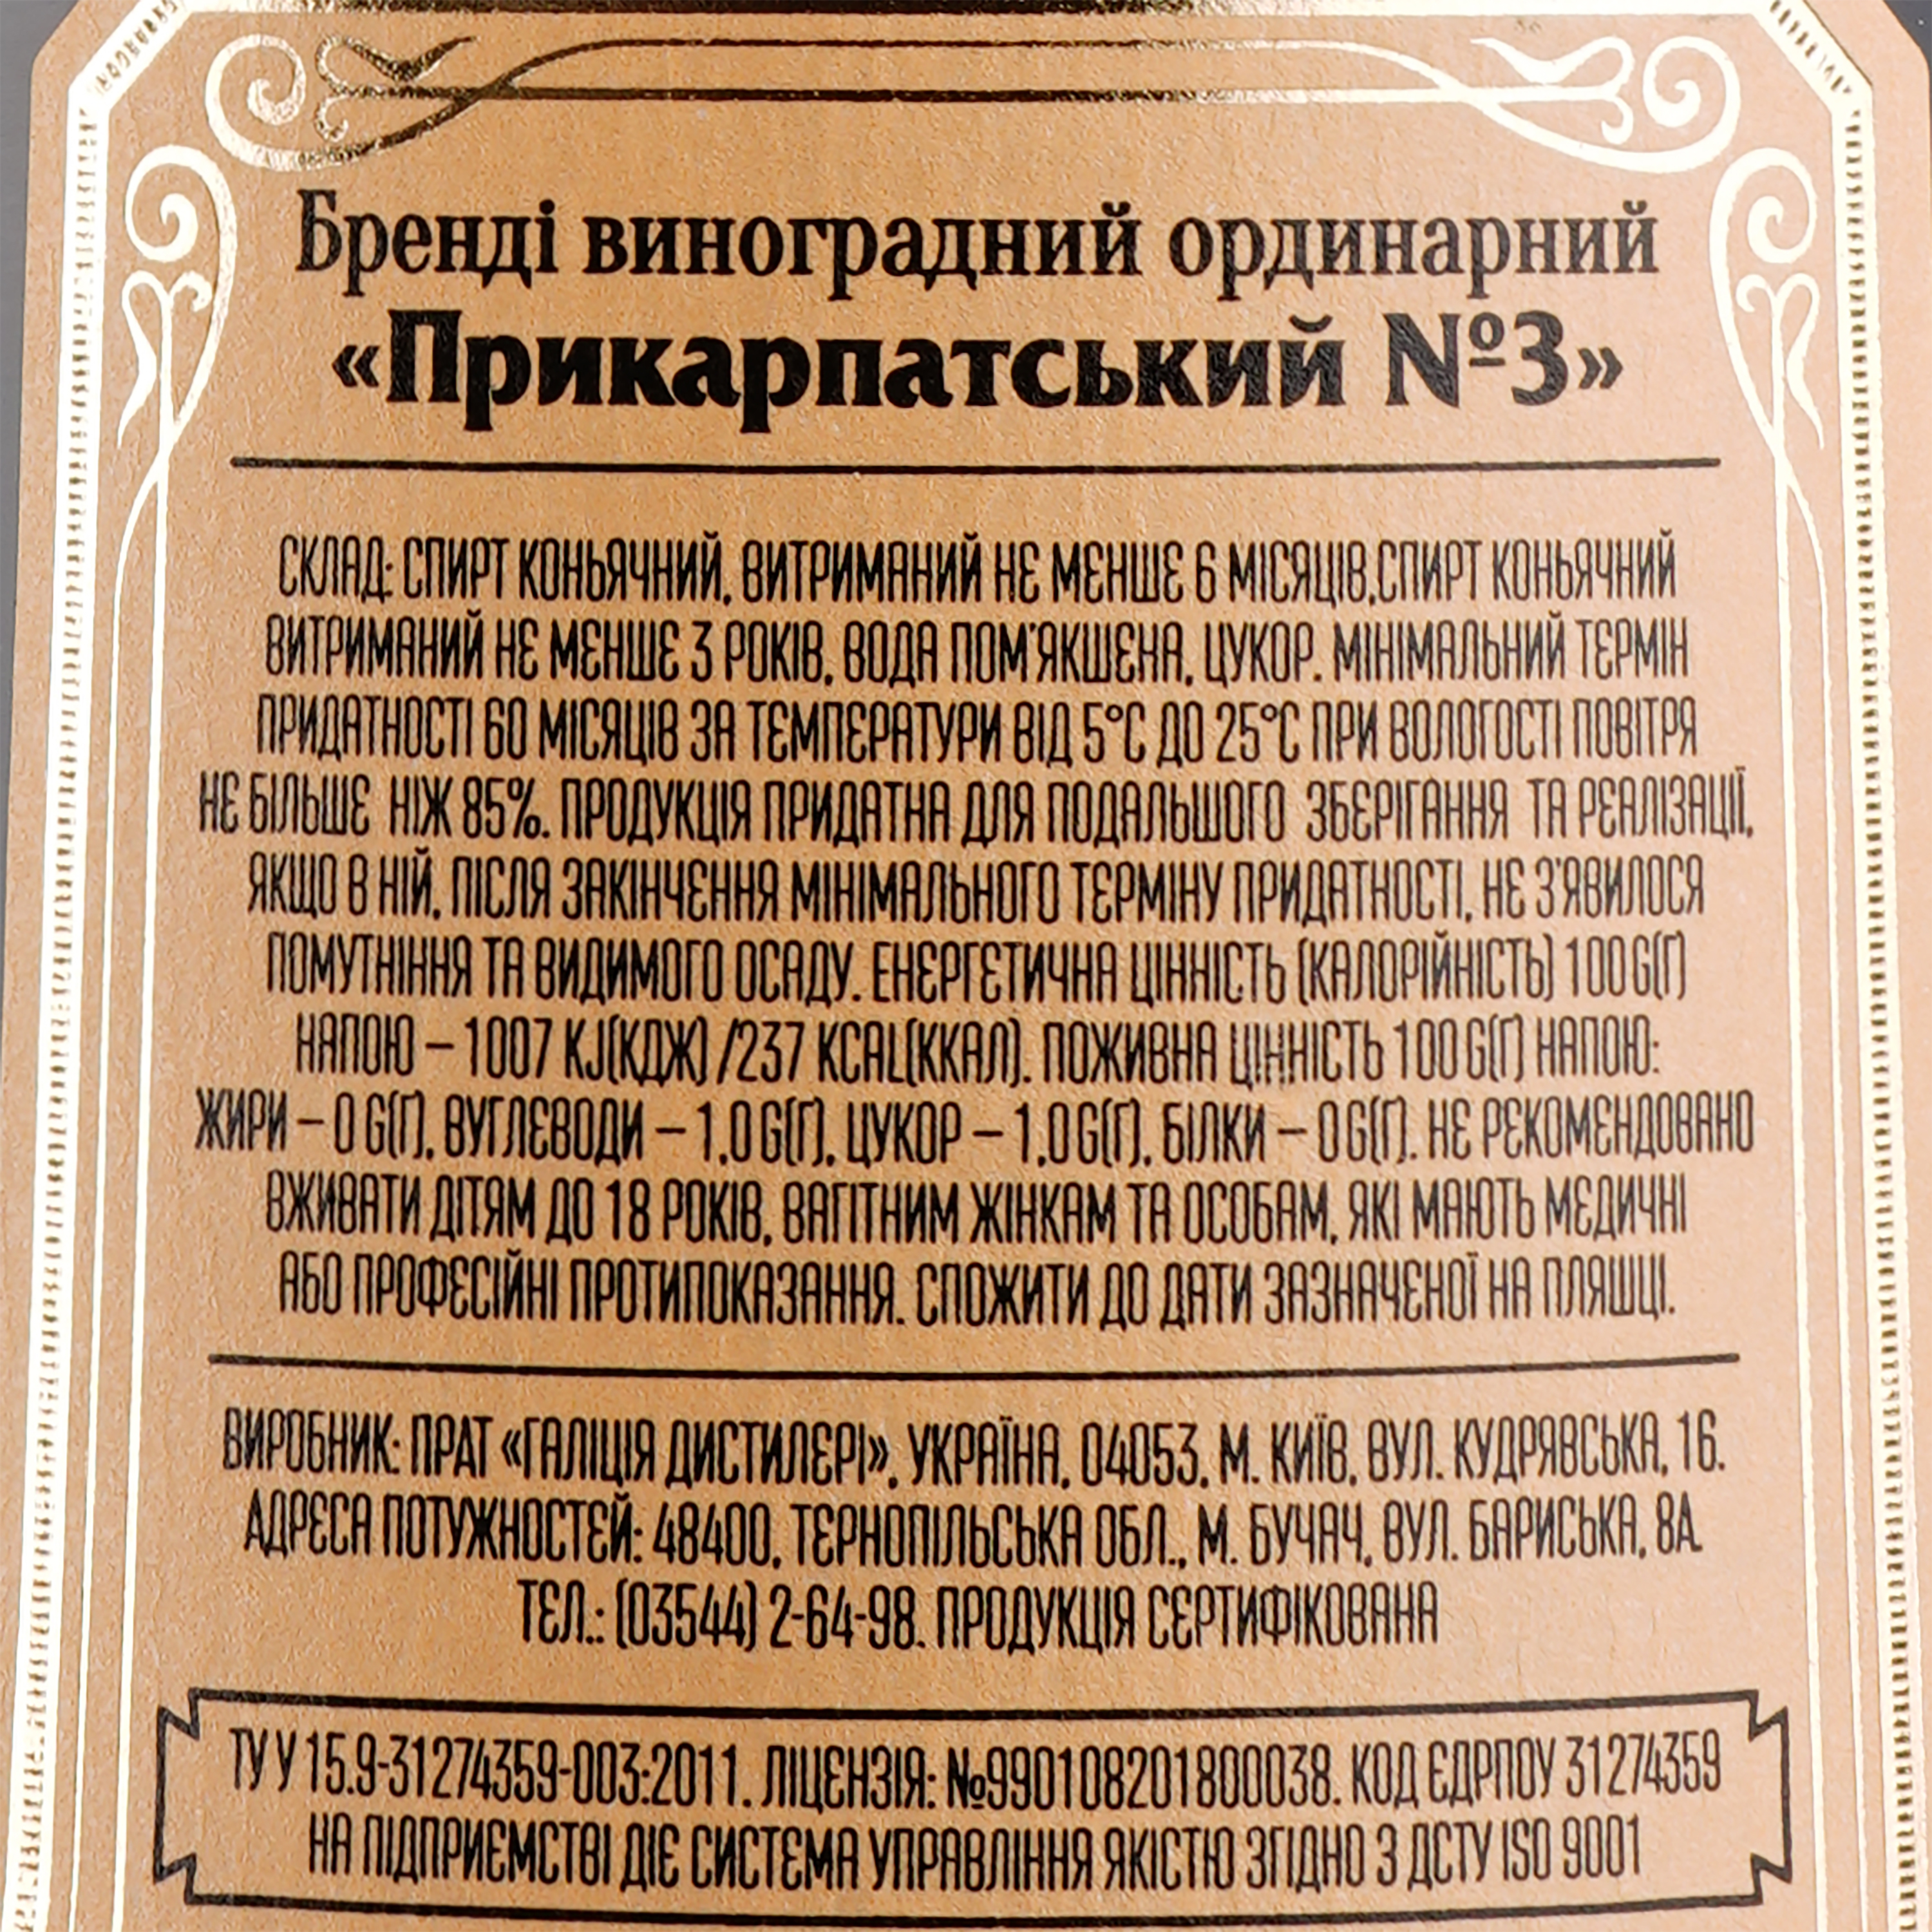 Бренди Прикарпатський №3 виноградный ординарный, 40%, 0,5 л - фото 3